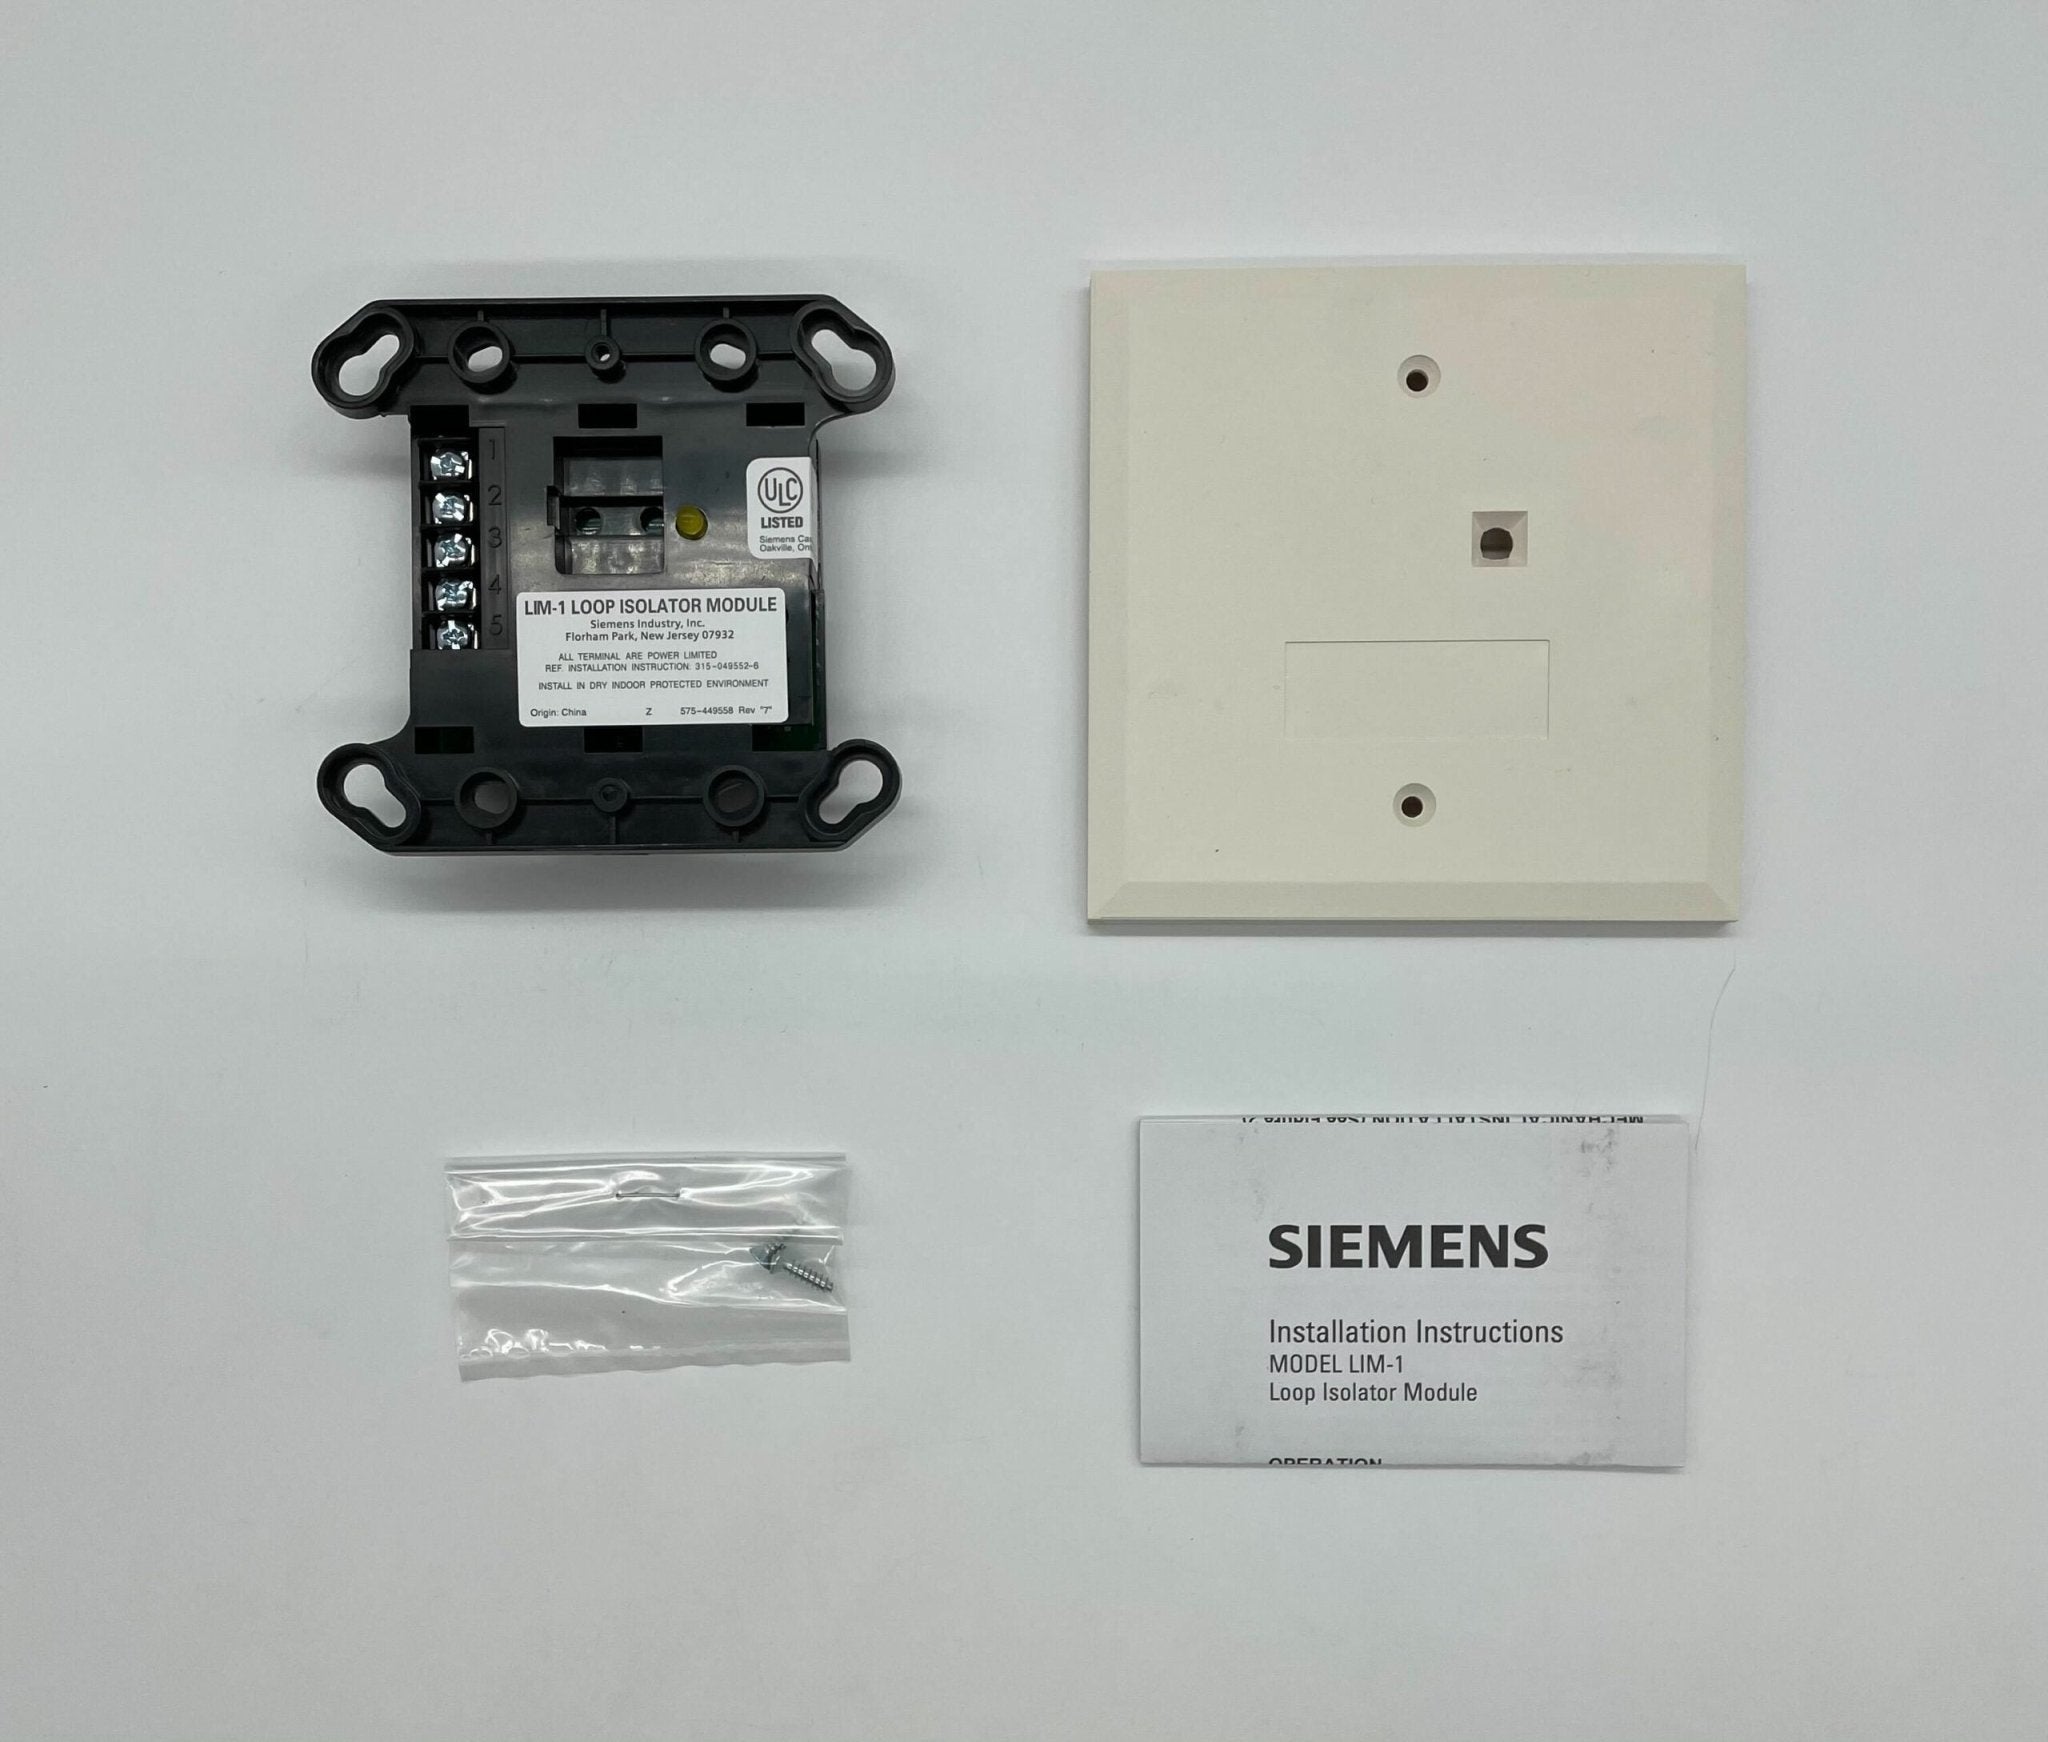 Siemens LIM-1 - The Fire Alarm Supplier